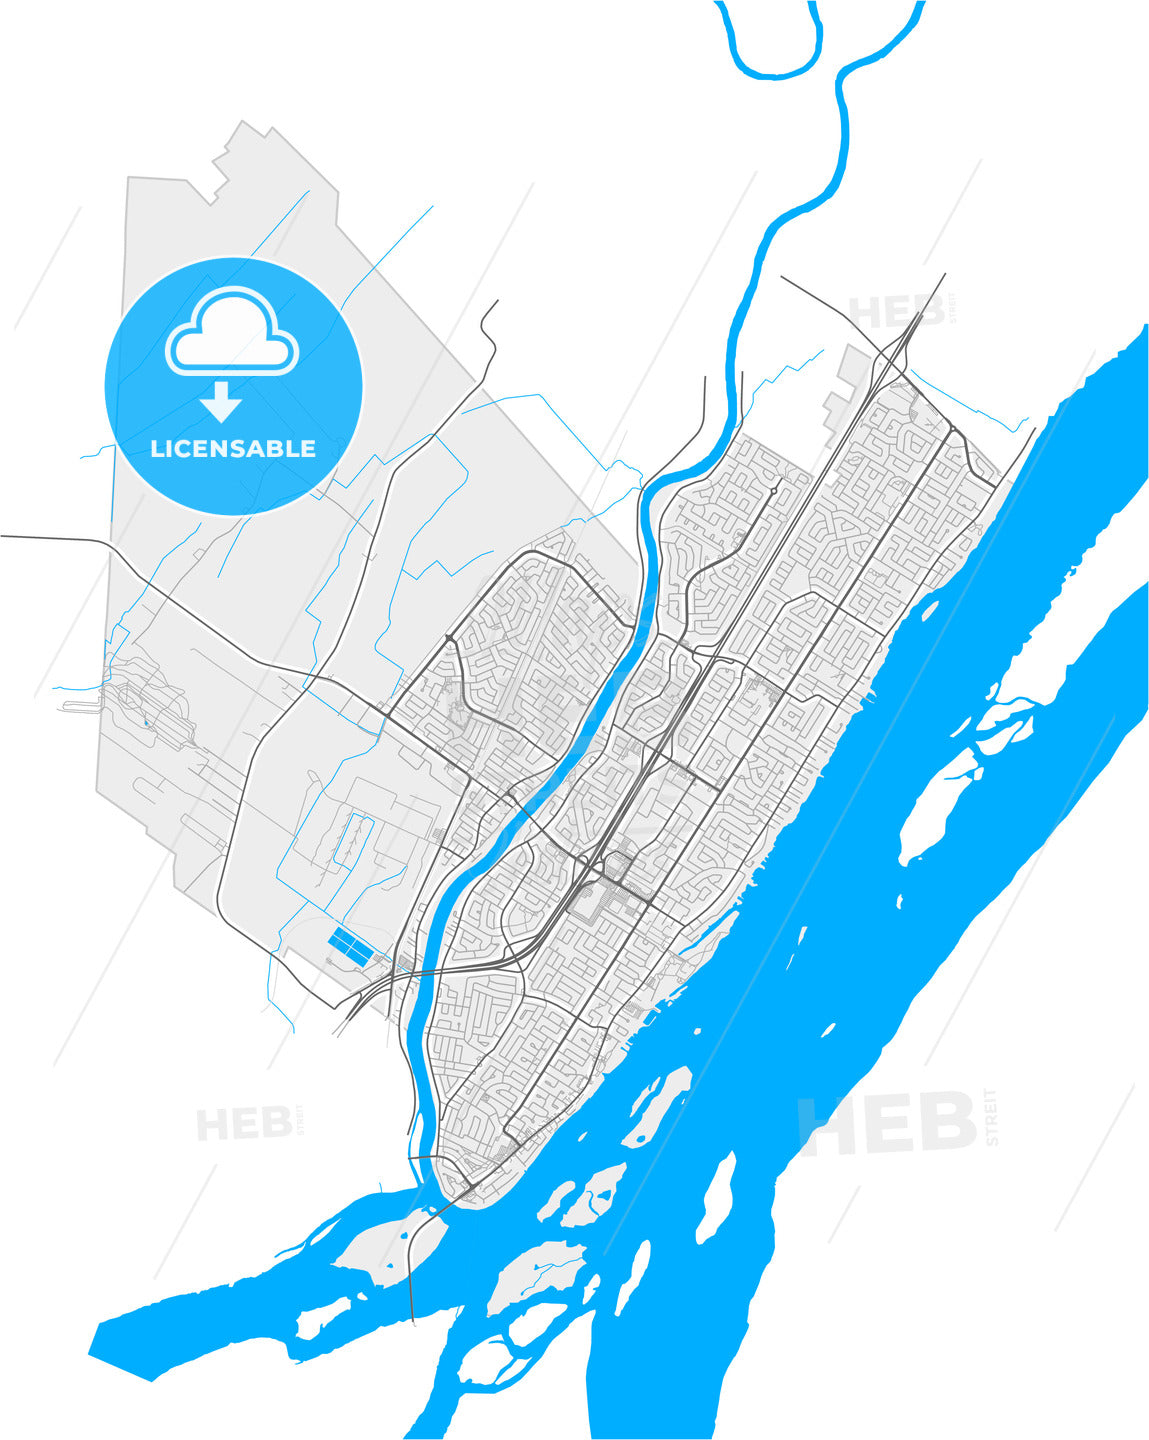 Repentigny, Quebec, Canada, high quality vector map